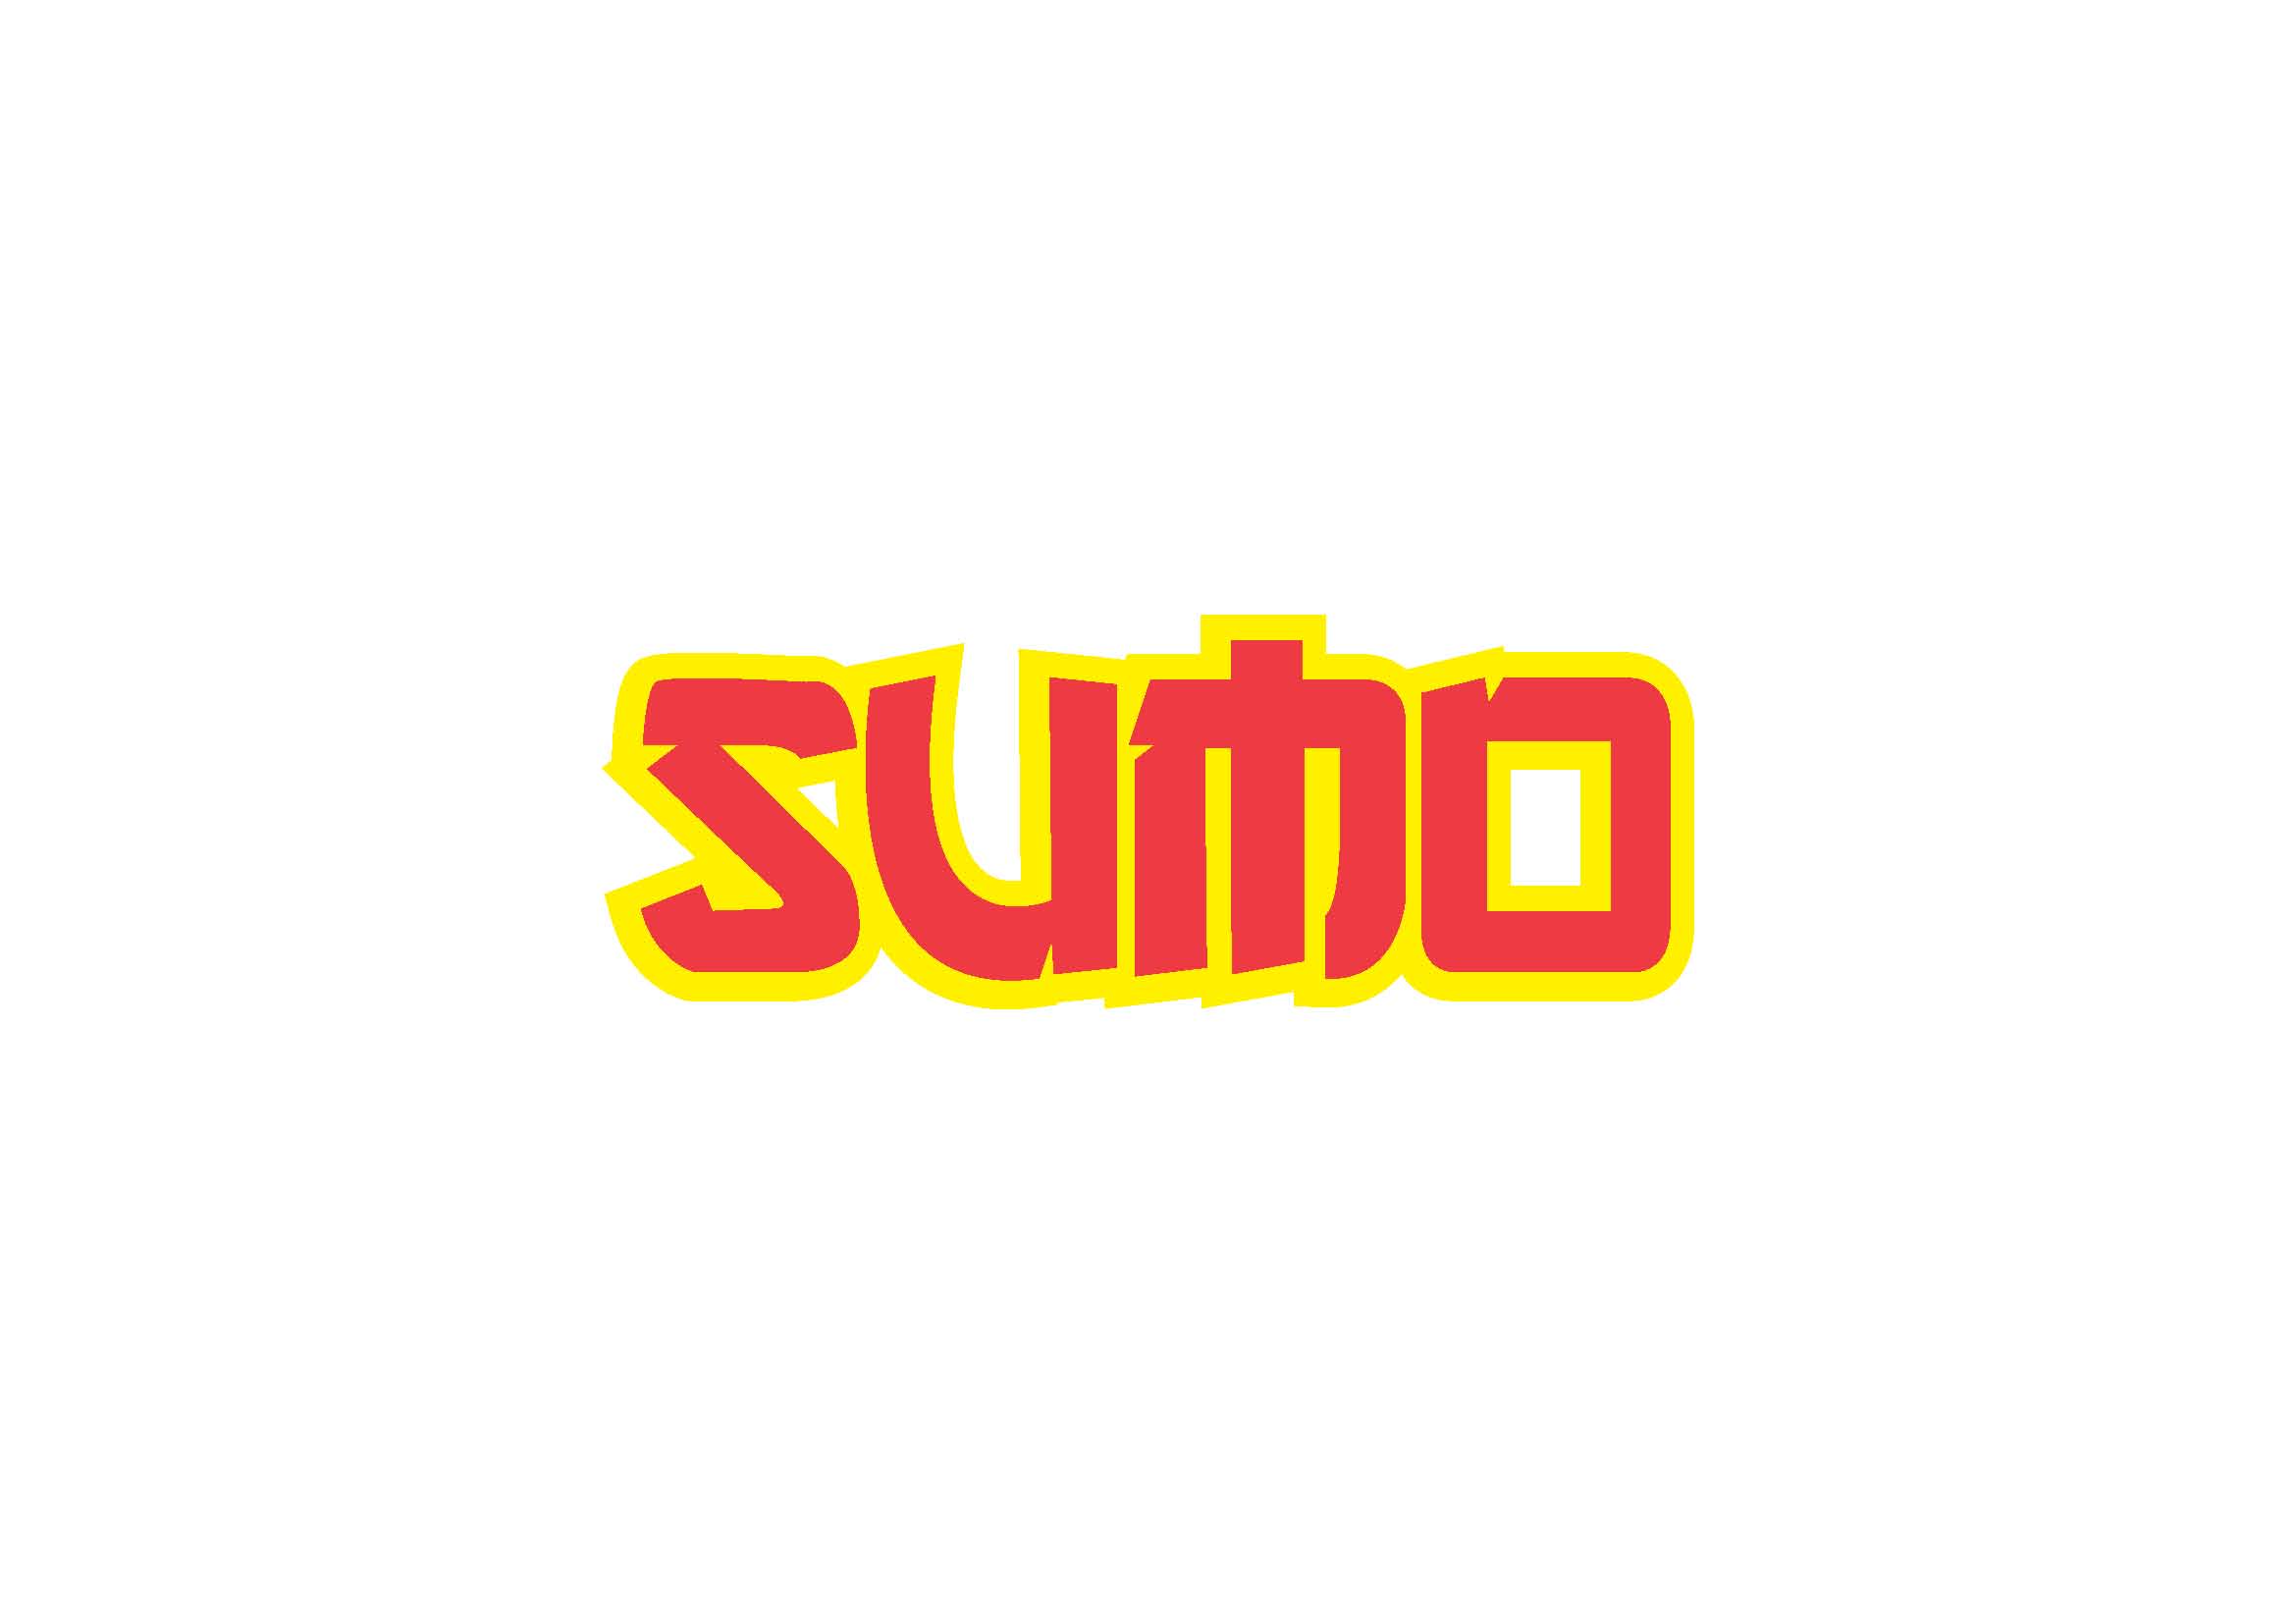 sumo1.jpg - 84.03 kb